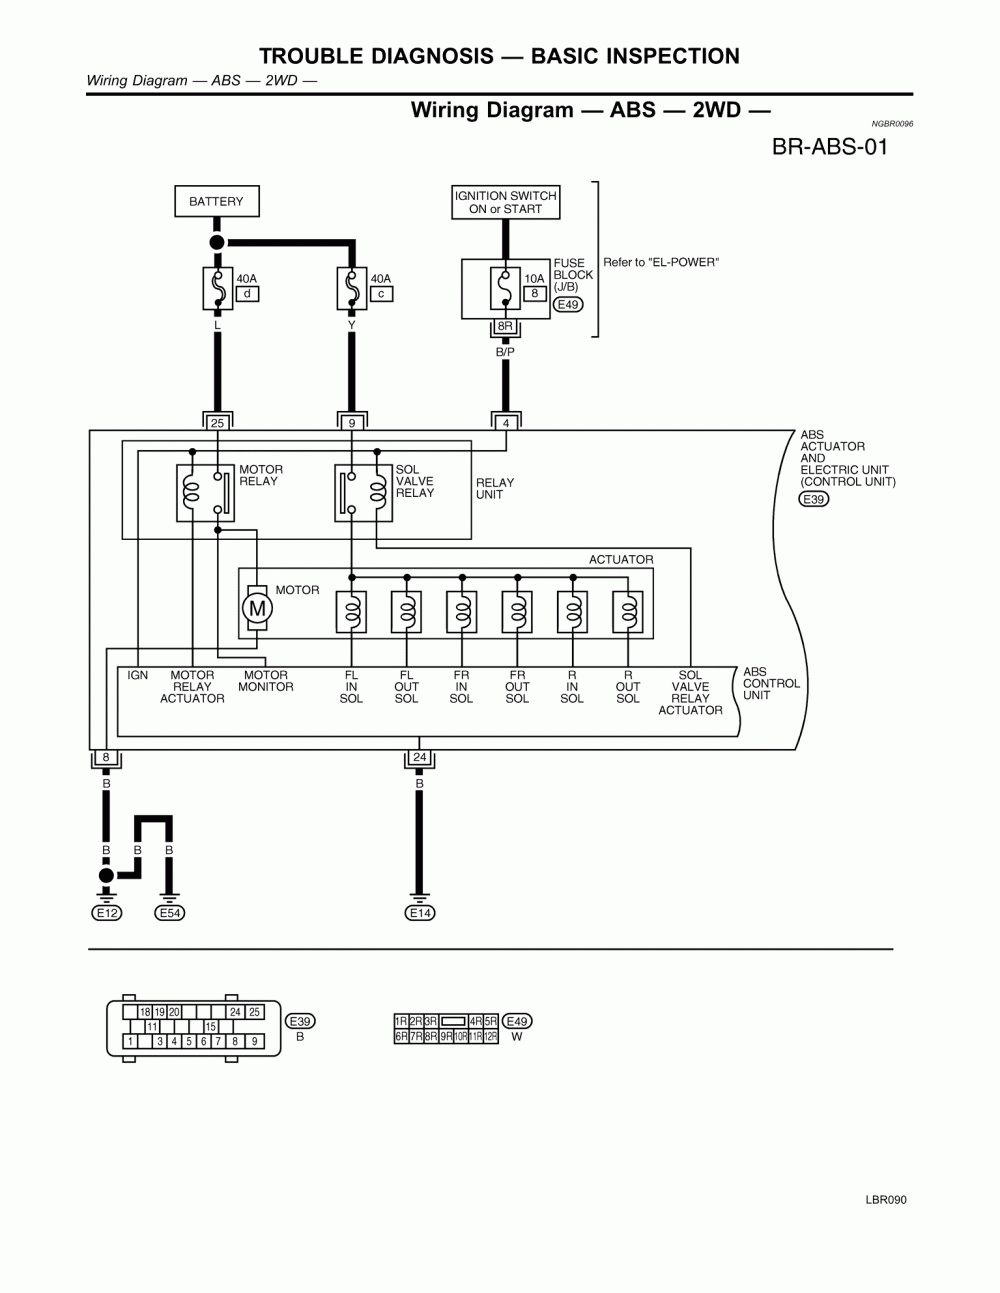 International 4900 Wiring Diagram Pdf | Wiring Diagram - International 4700 Wiring Diagram Pdf